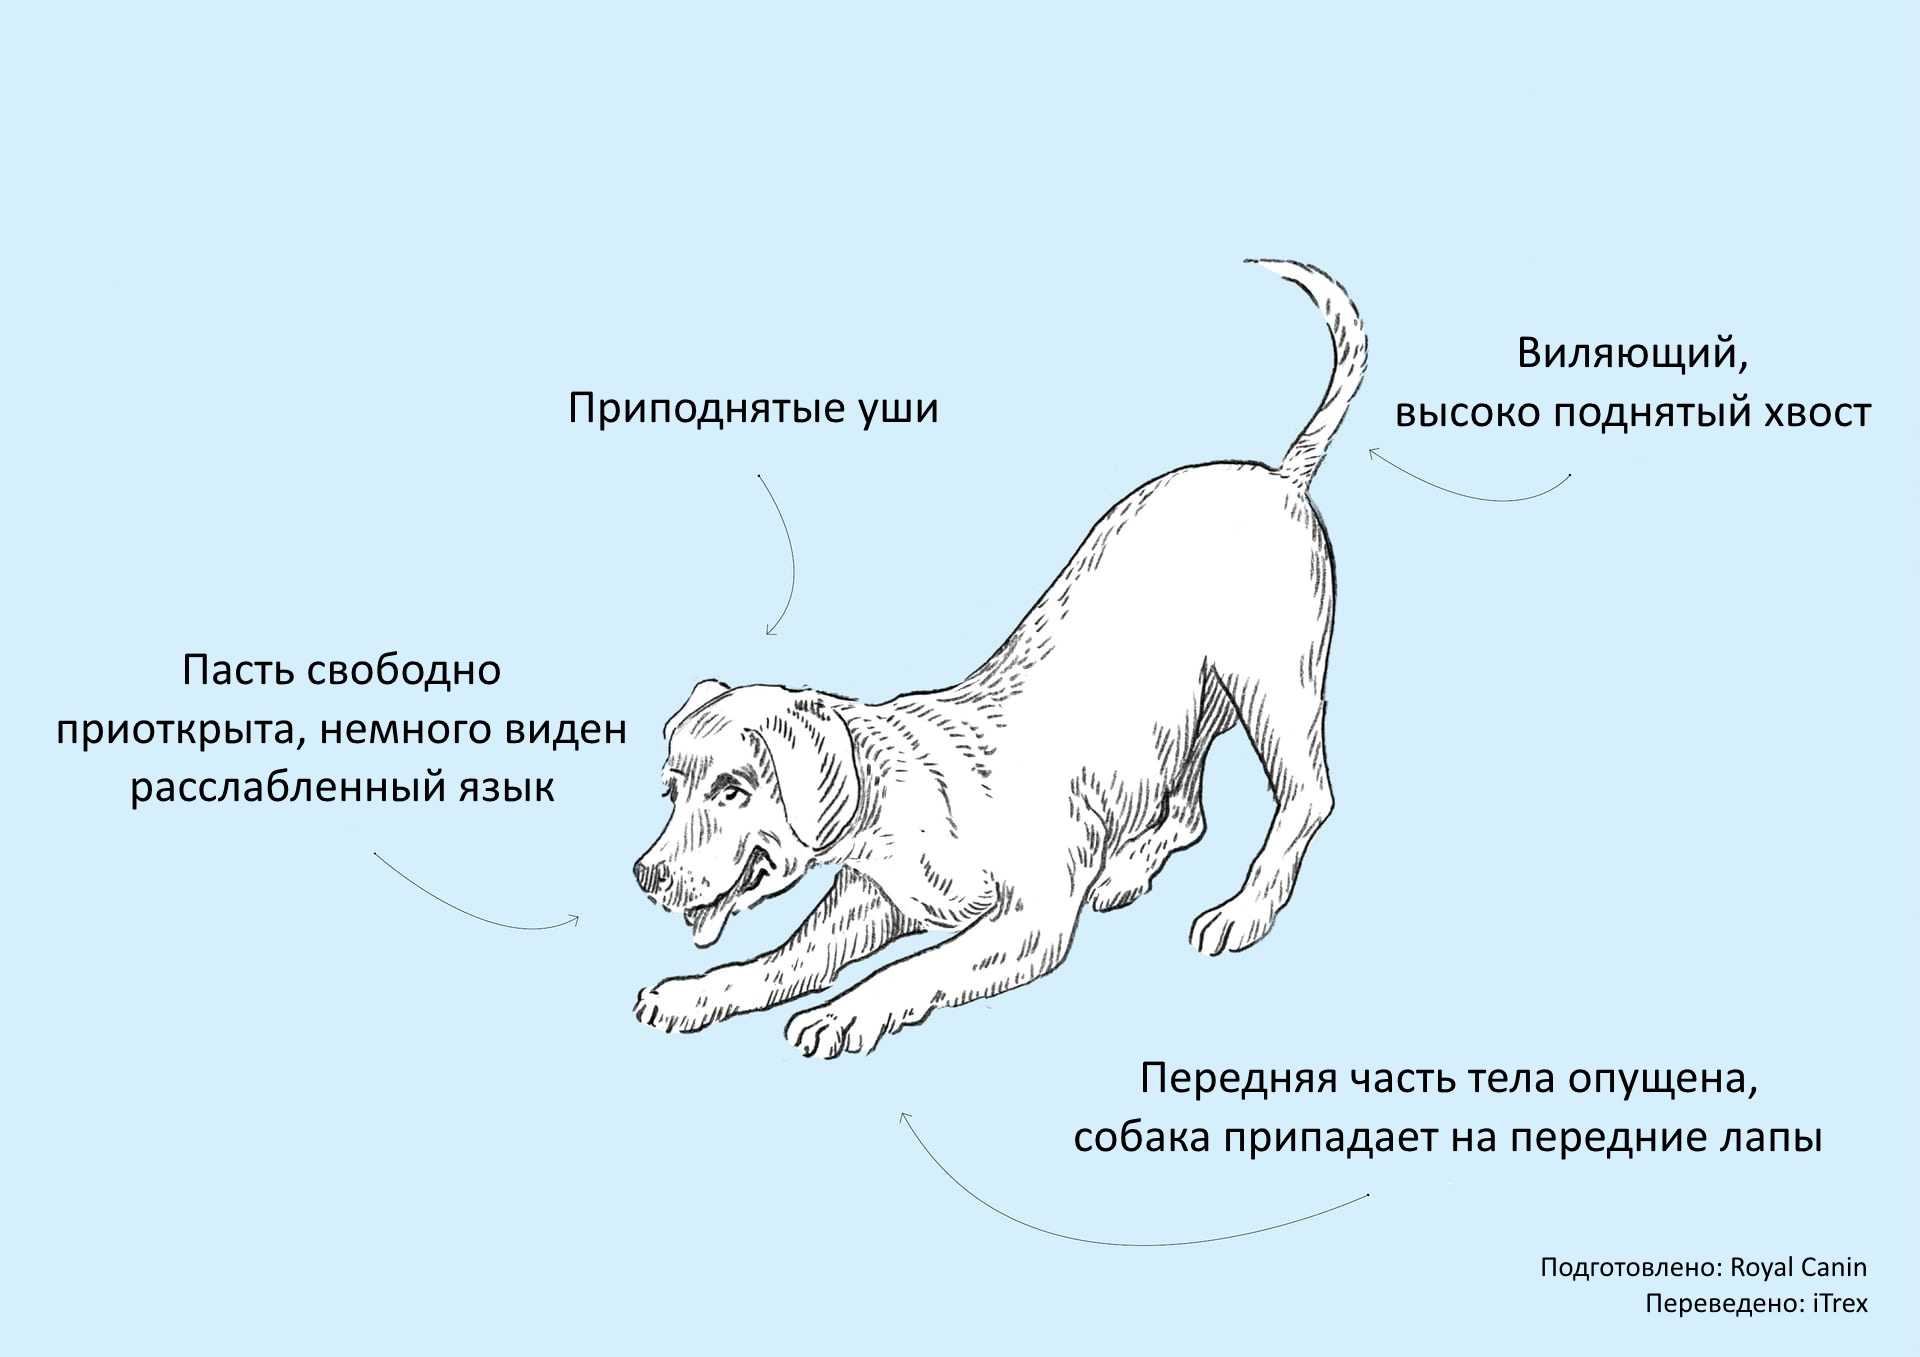 Иерархия в стае собак: как устроена система распределения ролей у питомцев